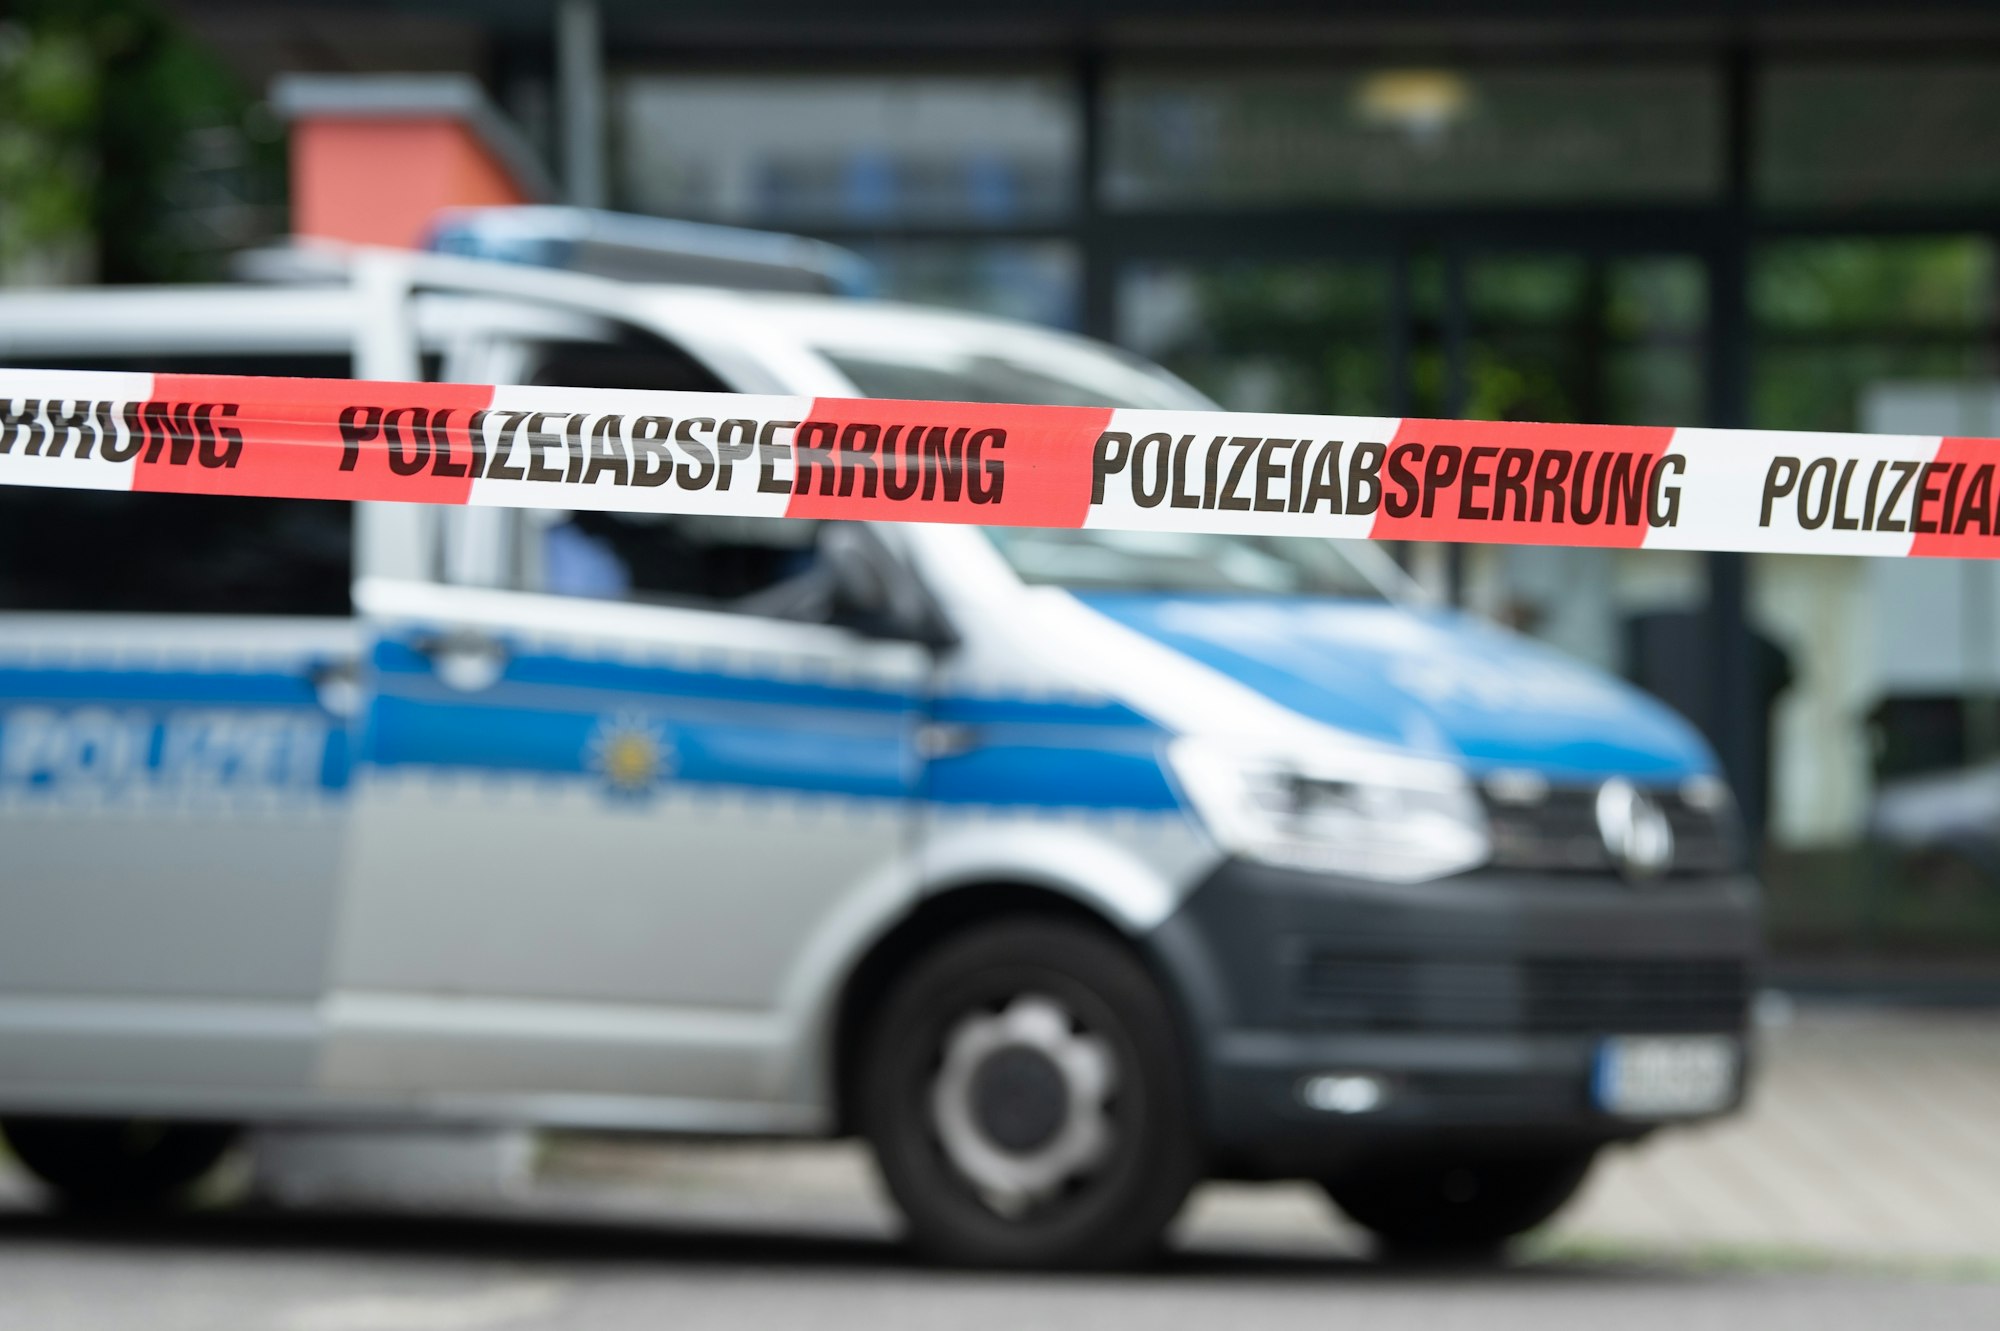 Ein Polizeiauto steht hinter einer Absperrung vor einem Studentenwohnheim im Dresdner Stadtteil Strehlen.